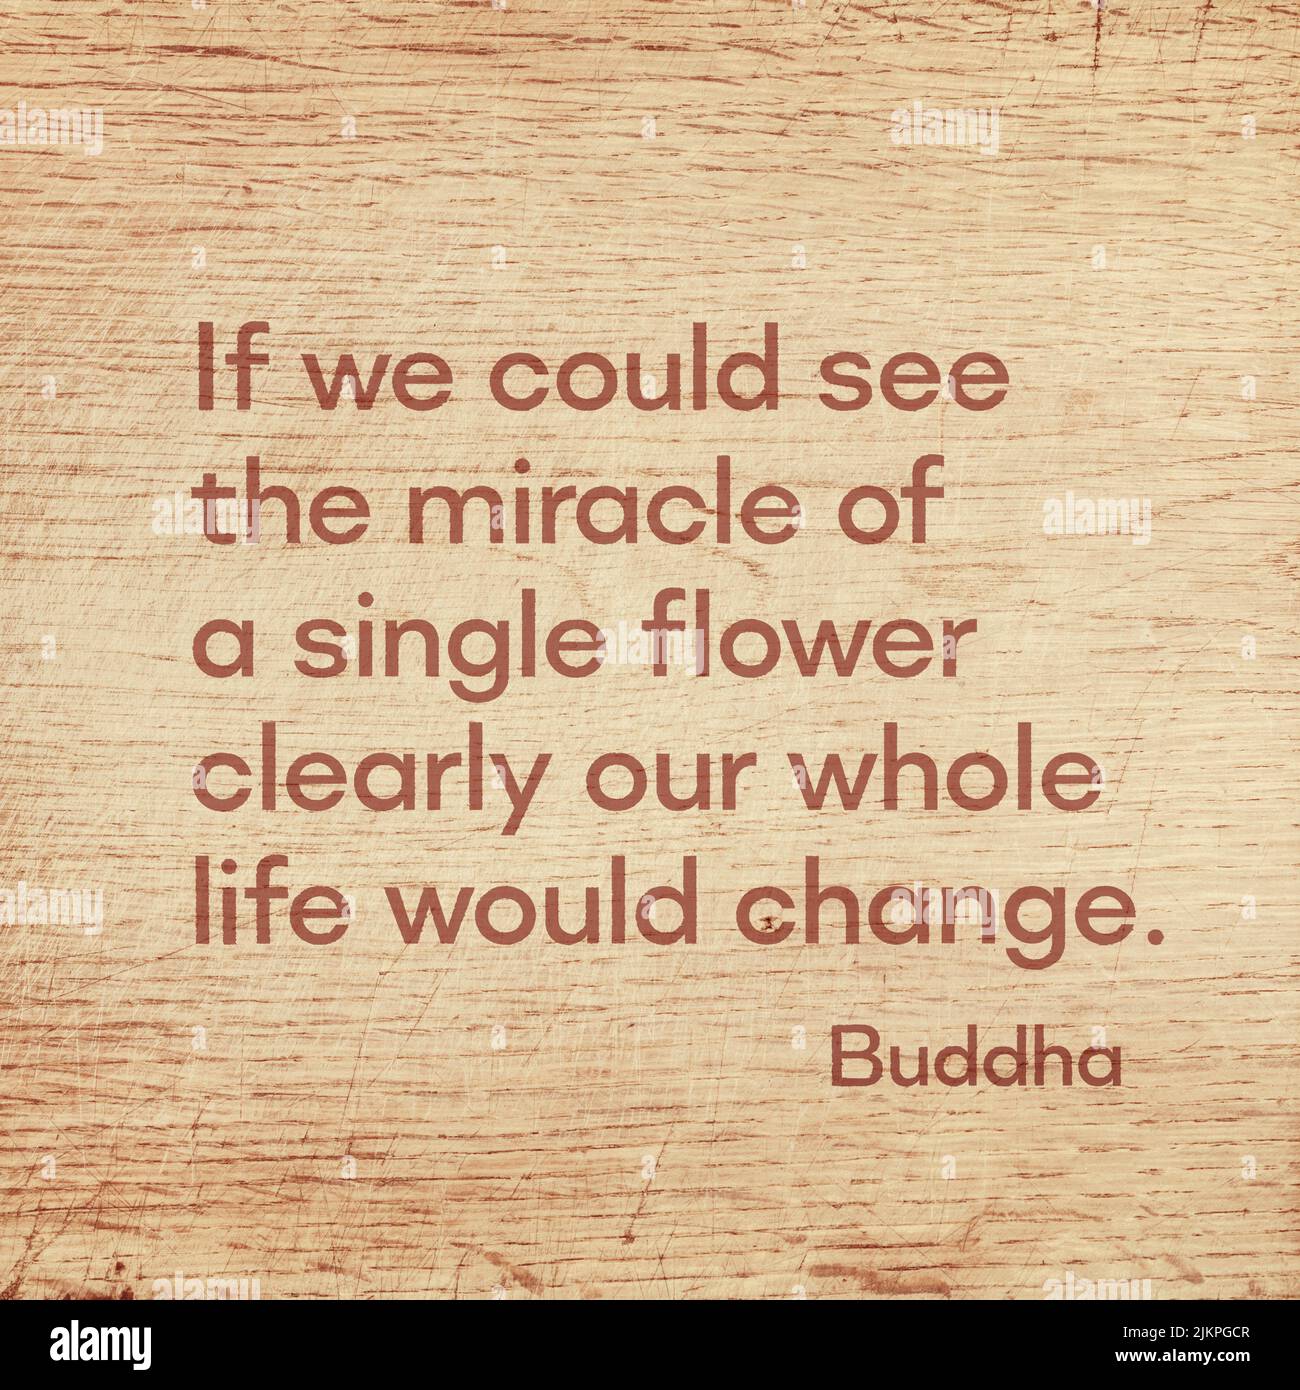 Si pudiéramos ver el milagro de una sola flor claramente nuestra vida entera cambiaría - la famosa cita de Gautama Buddha impresa en tablero de madera grunge Foto de stock